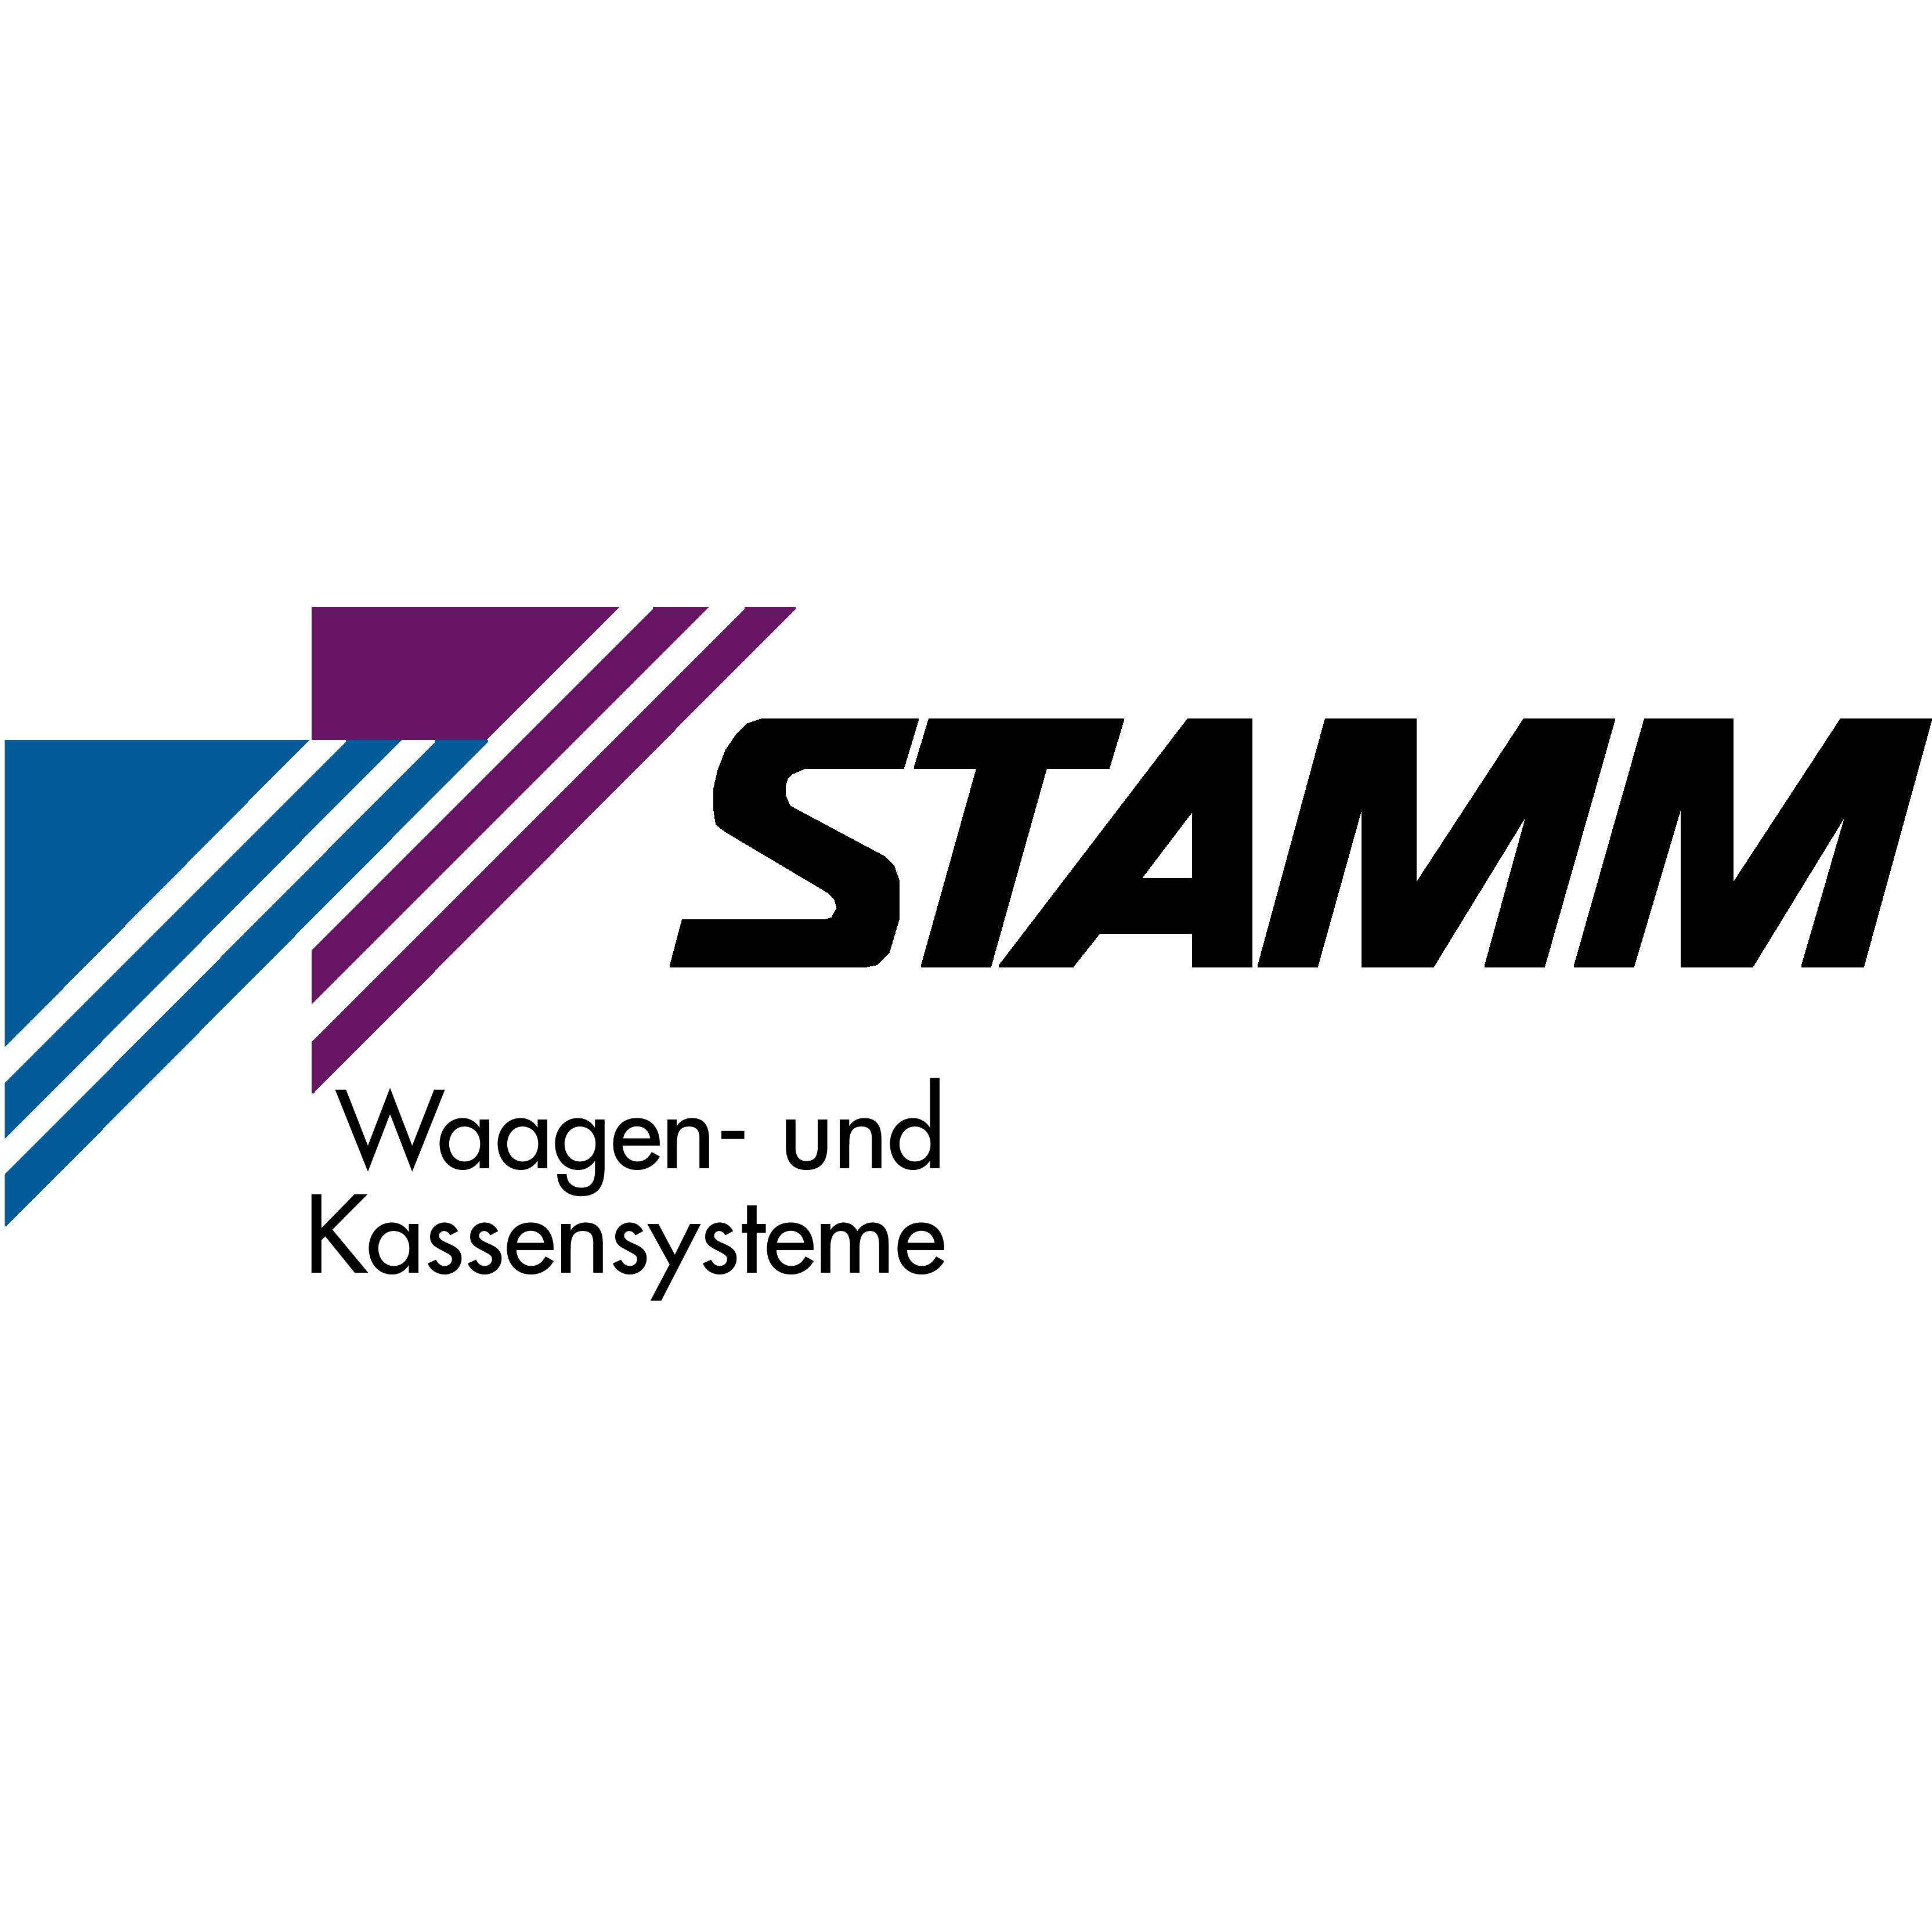 Stamm Waagen- und Kassensysteme in Aschaffenburg - Logo